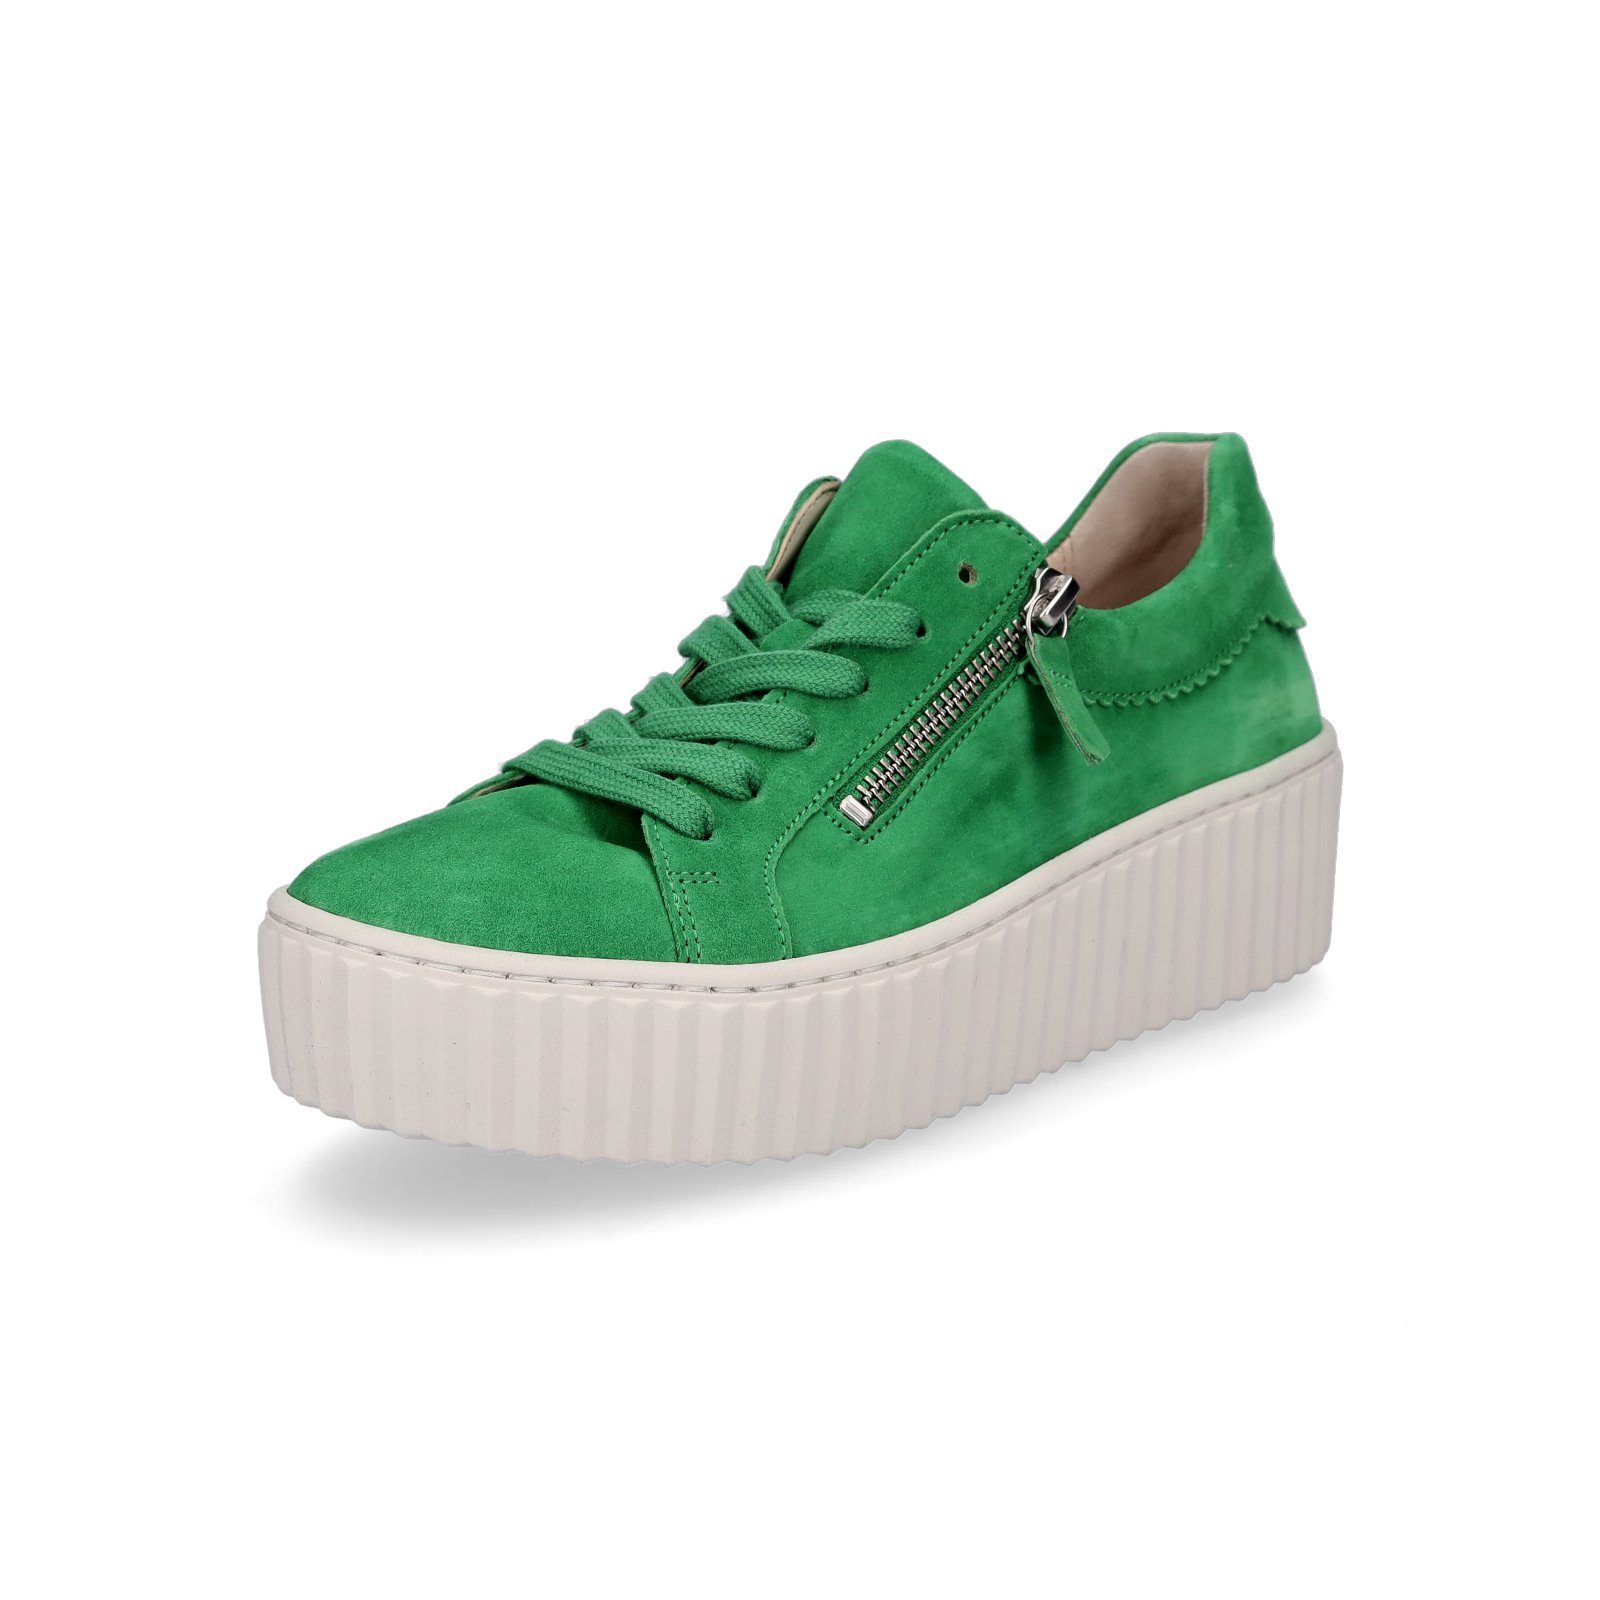 Gabor Gabor Damen Plateau Sneaker grün Sneaker, Schnürung & Reißverschluss,  sommerliche Farbgestaltung, Obermaterial Rauleder